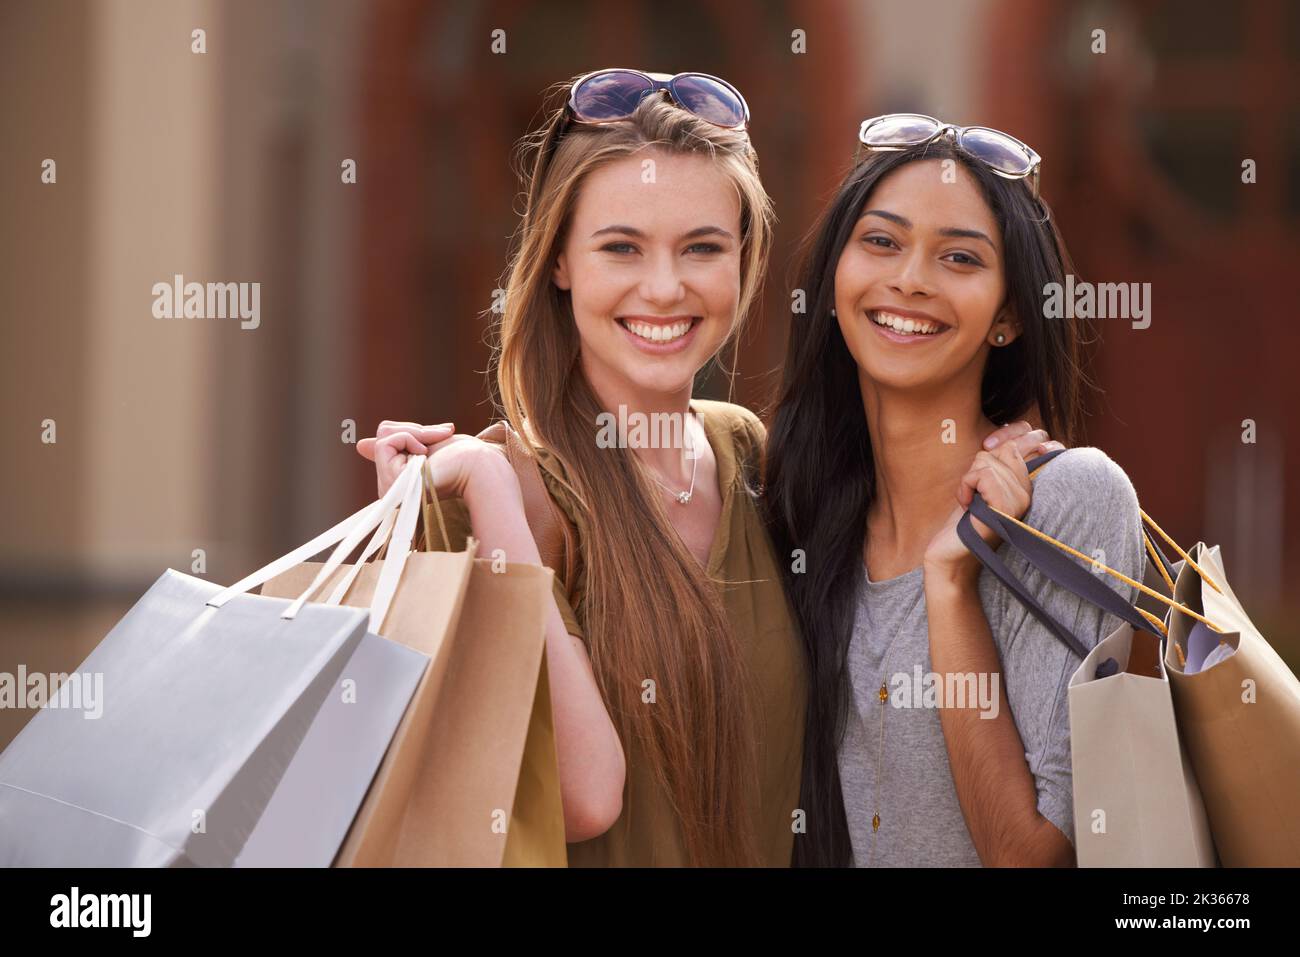 Mit meinem Mädchen einkaufen gehen ... zwei attraktive junge Frau mit ihren Einkaufstaschen nach einem Tag im Einzelhandel Therapie. Stockfoto